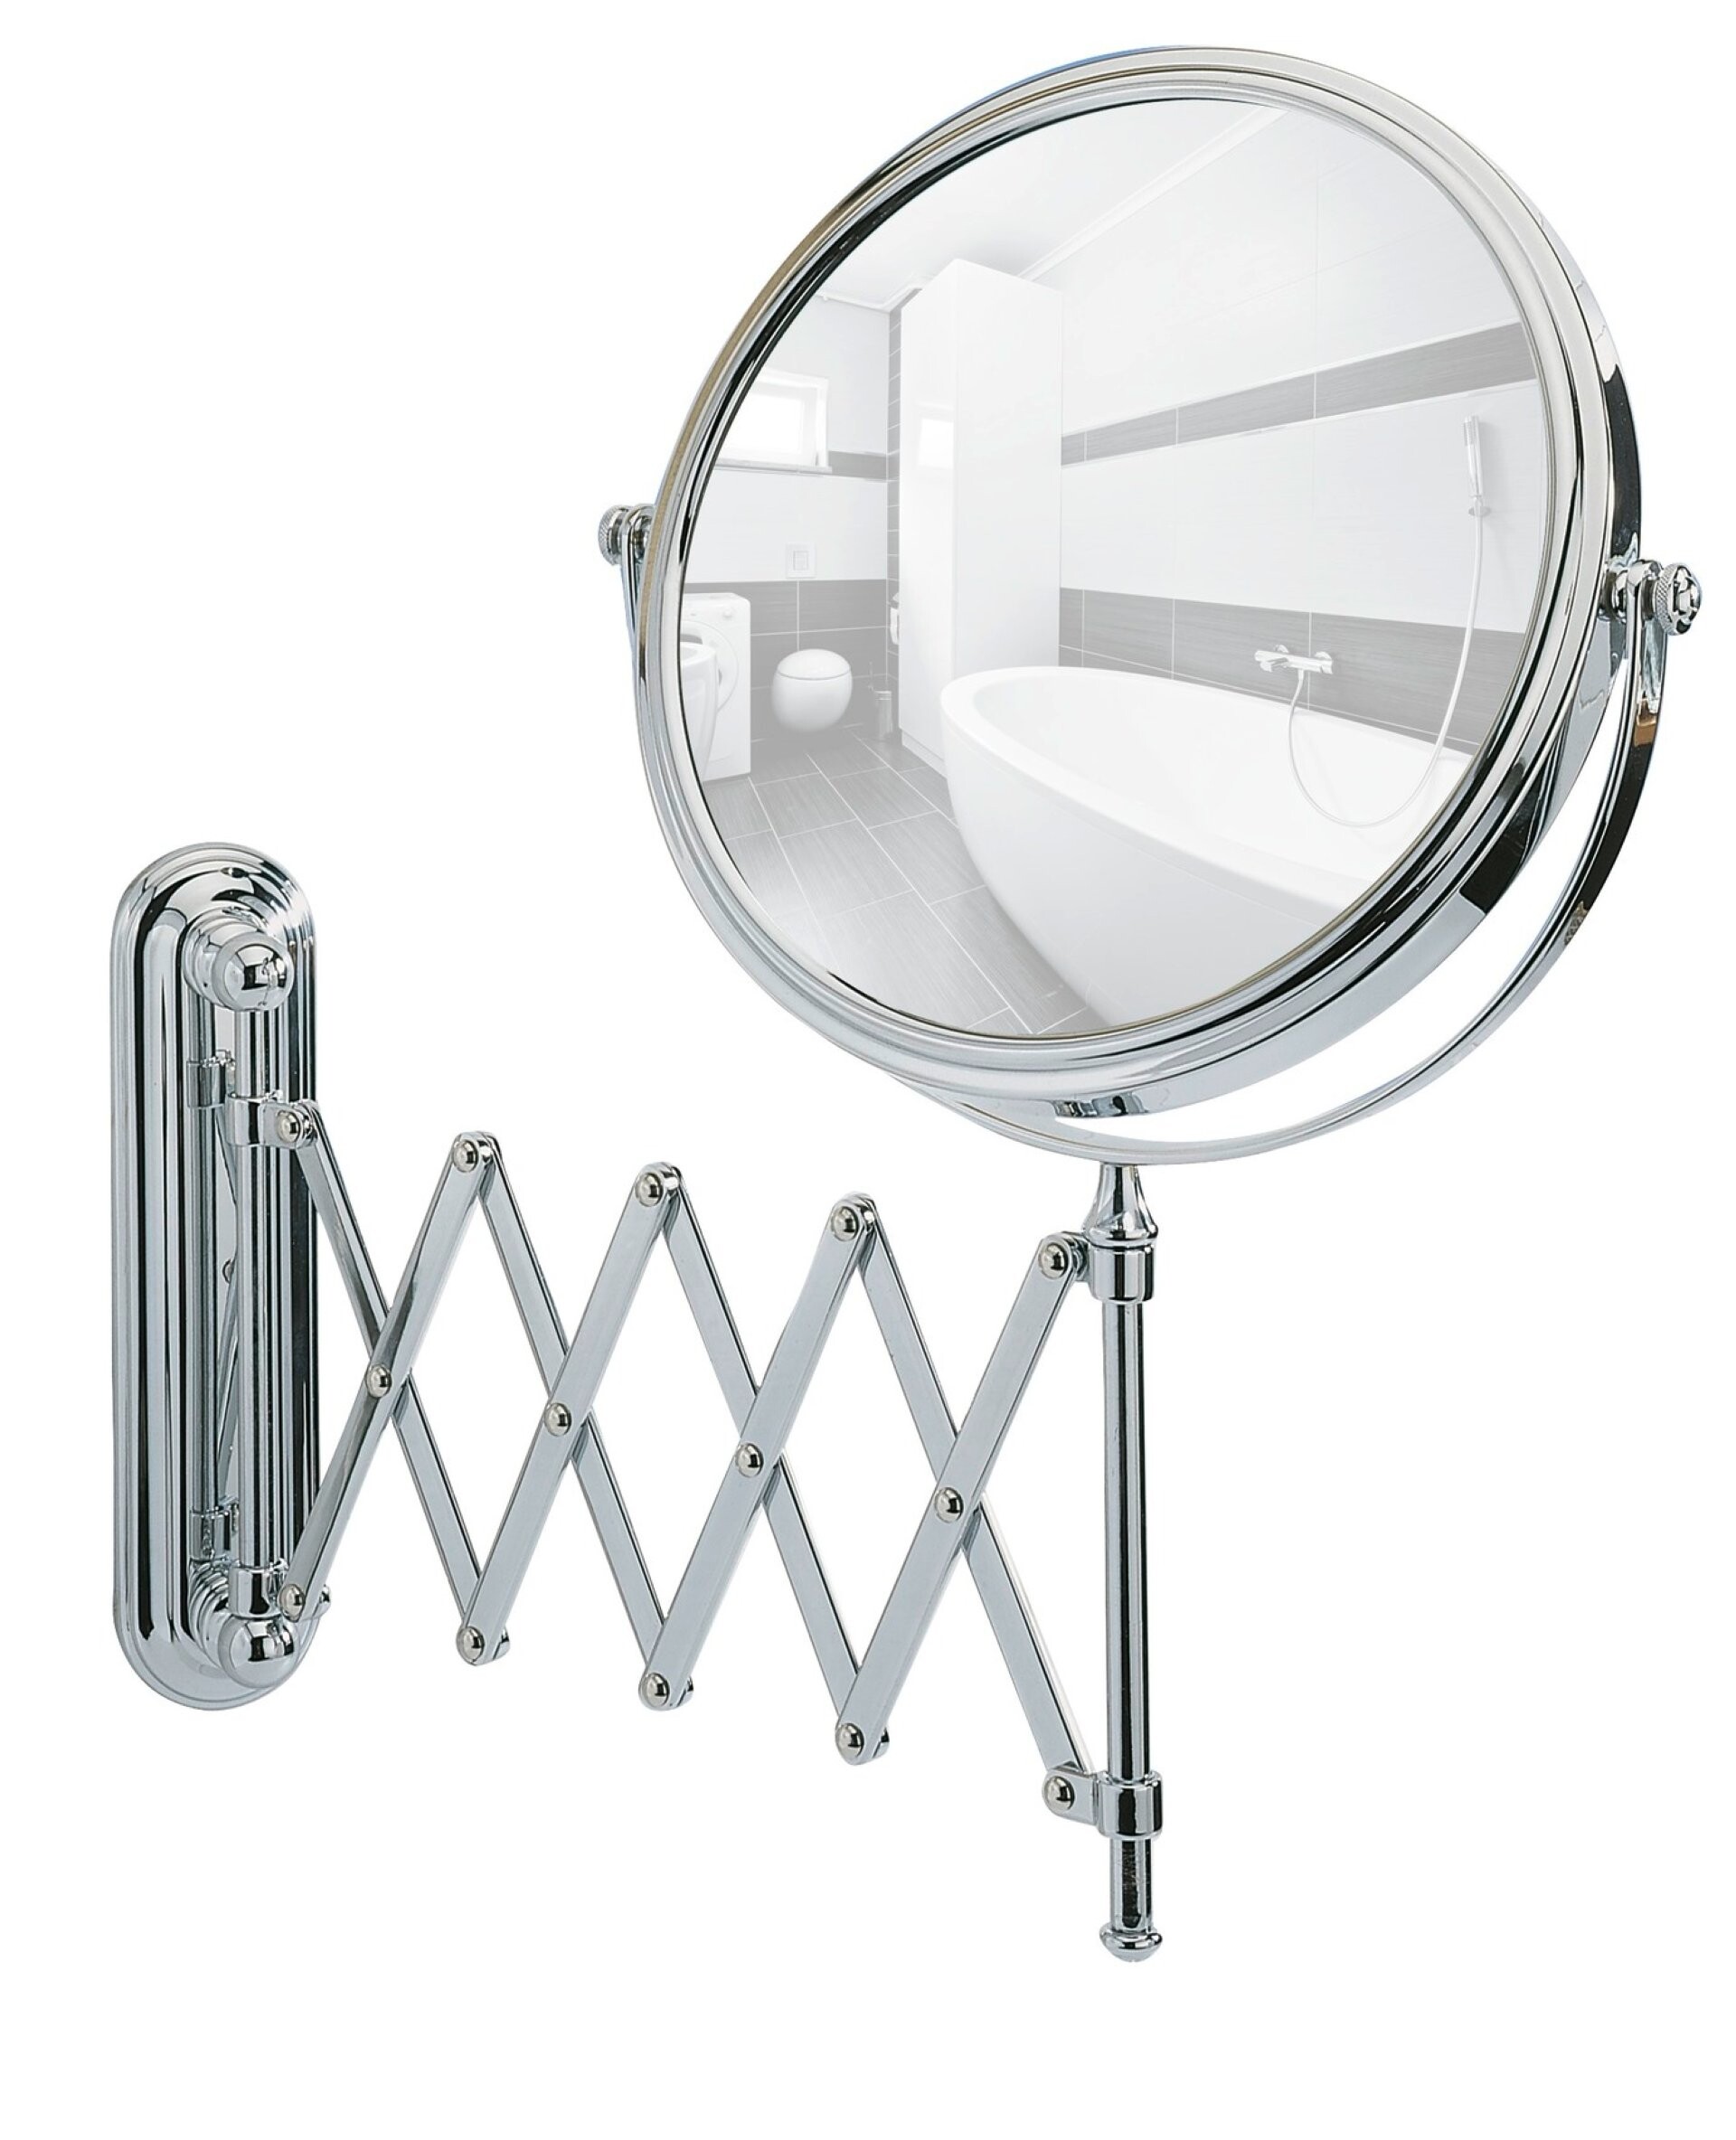 WENKO Kosmetikspiegel Deluxe Teleskop, Wandspiegel, 5-fach Vergrößerung